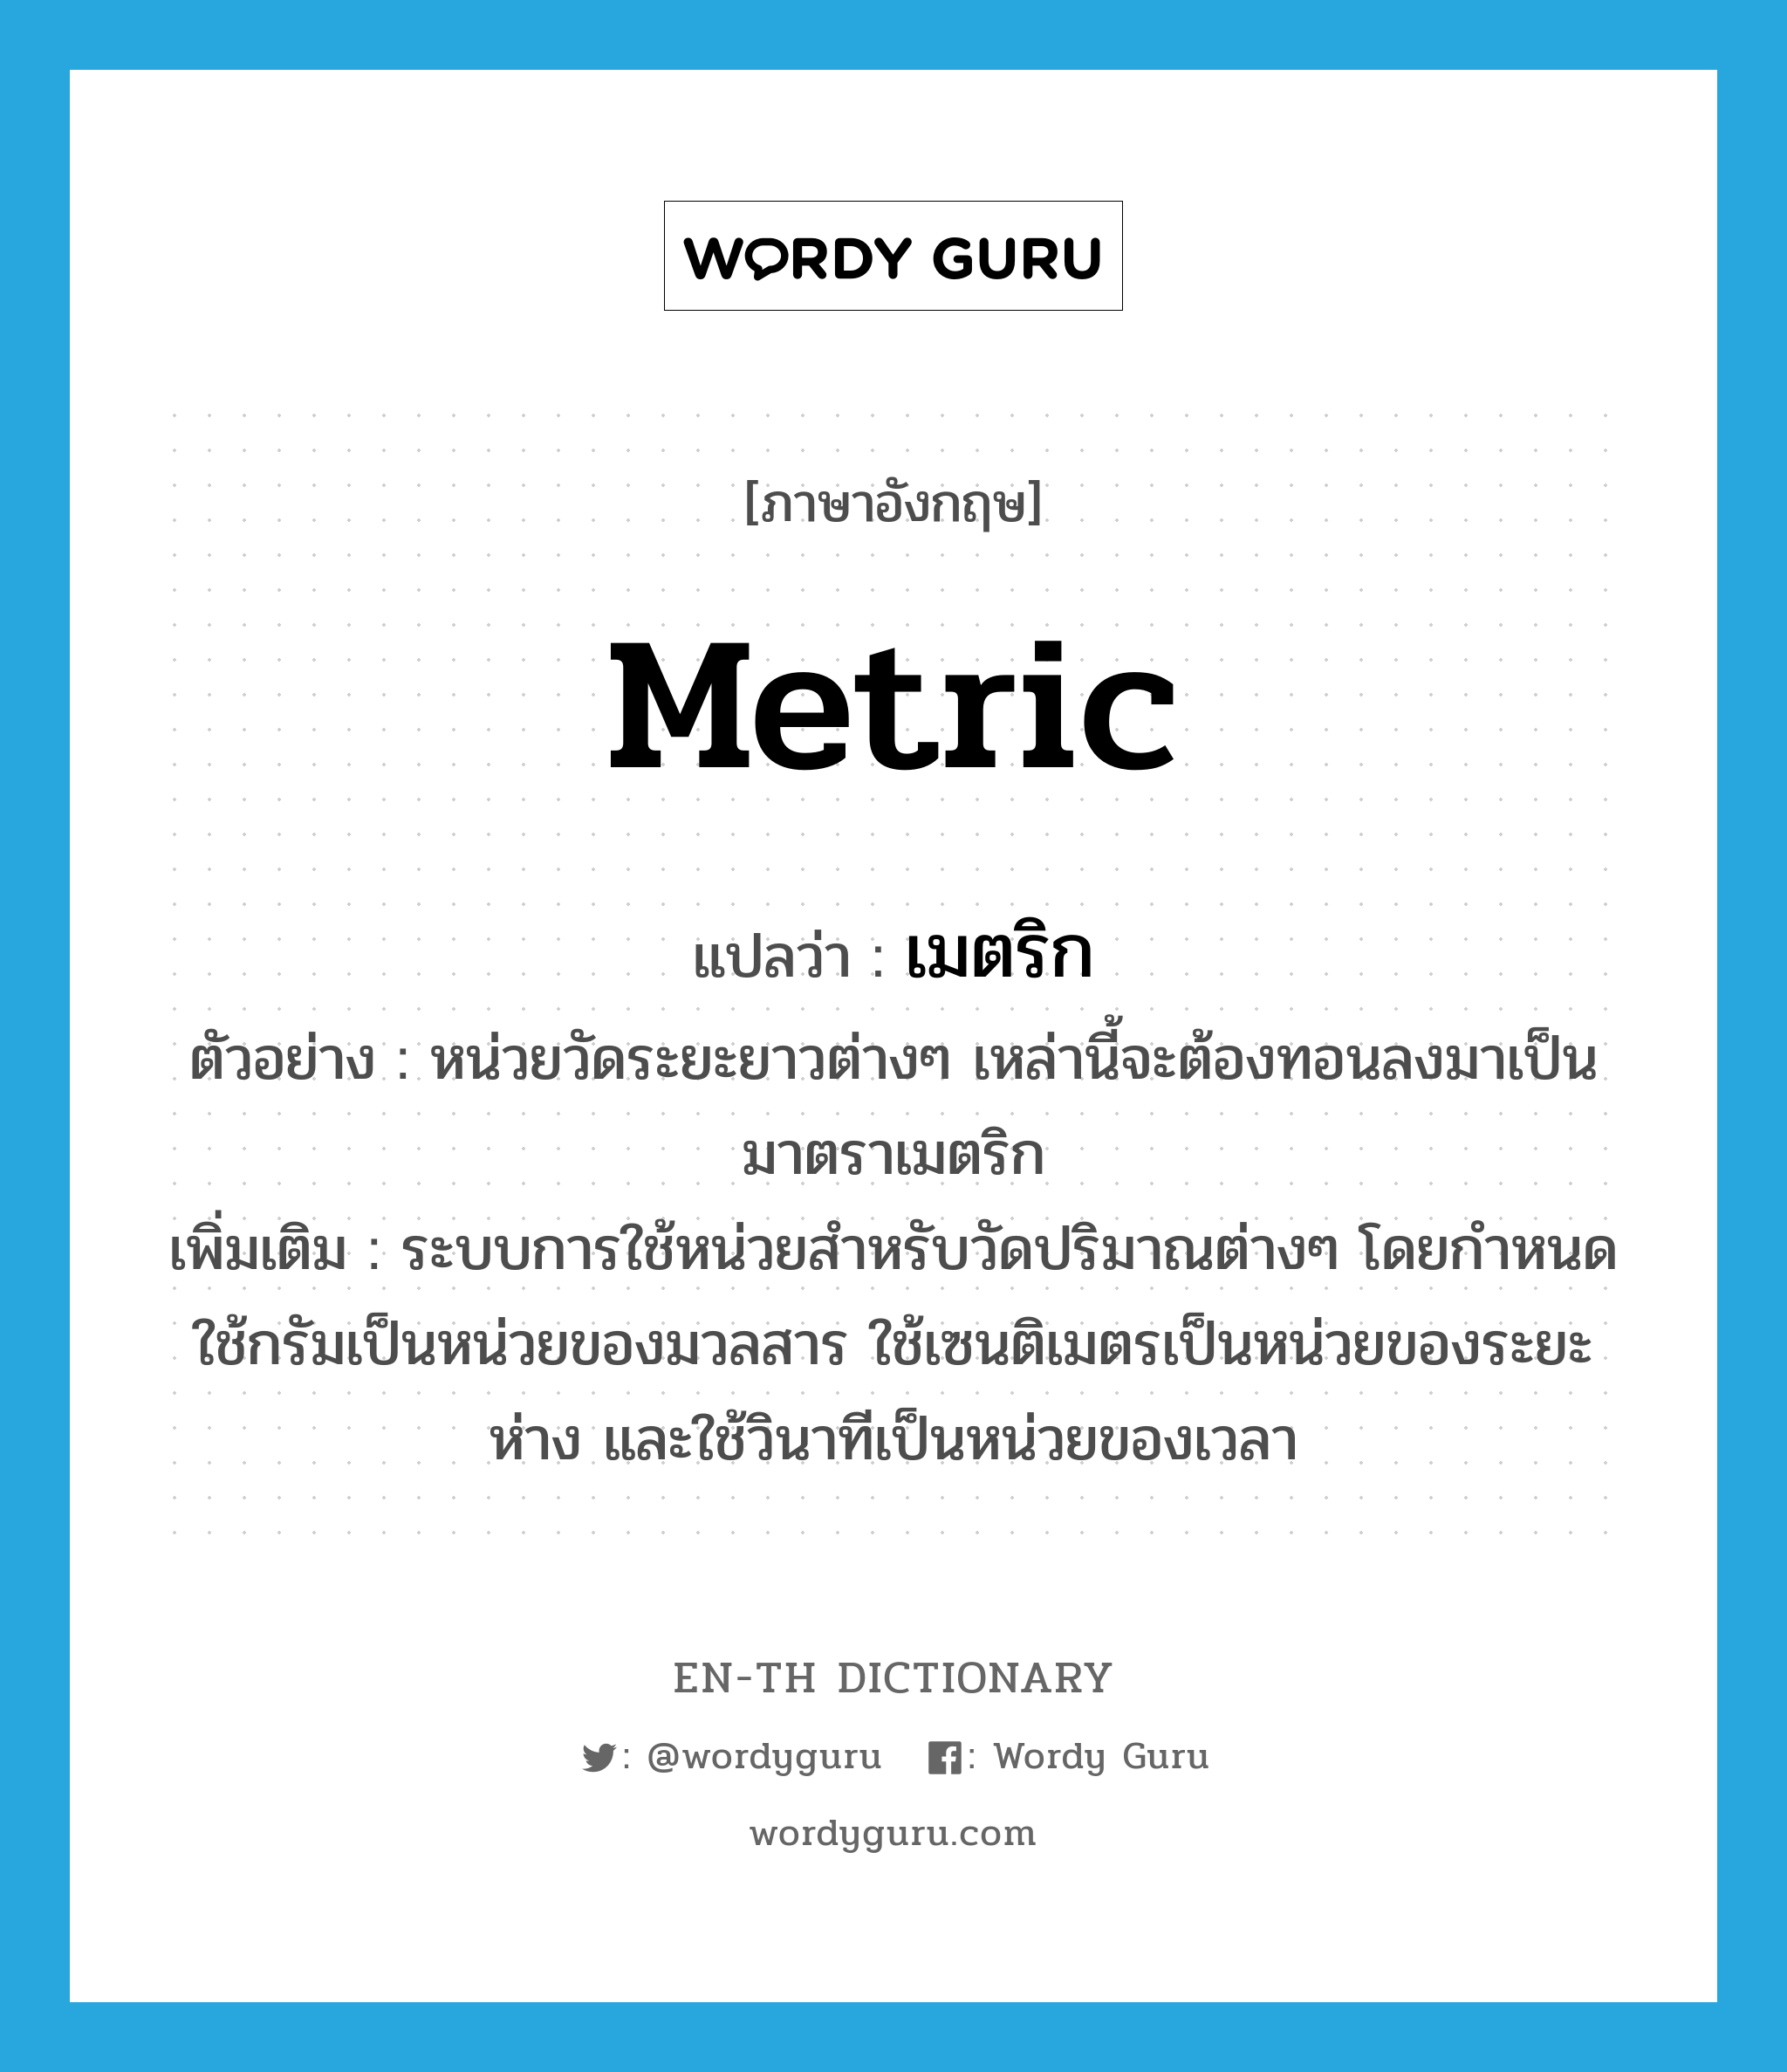 metric แปลว่า?, คำศัพท์ภาษาอังกฤษ metric แปลว่า เมตริก ประเภท N ตัวอย่าง หน่วยวัดระยะยาวต่างๆ เหล่านี้จะต้องทอนลงมาเป็นมาตราเมตริก เพิ่มเติม ระบบการใช้หน่วยสำหรับวัดปริมาณต่างๆ โดยกำหนดใช้กรัมเป็นหน่วยของมวลสาร ใช้เซนติเมตรเป็นหน่วยของระยะห่าง และใช้วินาทีเป็นหน่วยของเวลา หมวด N